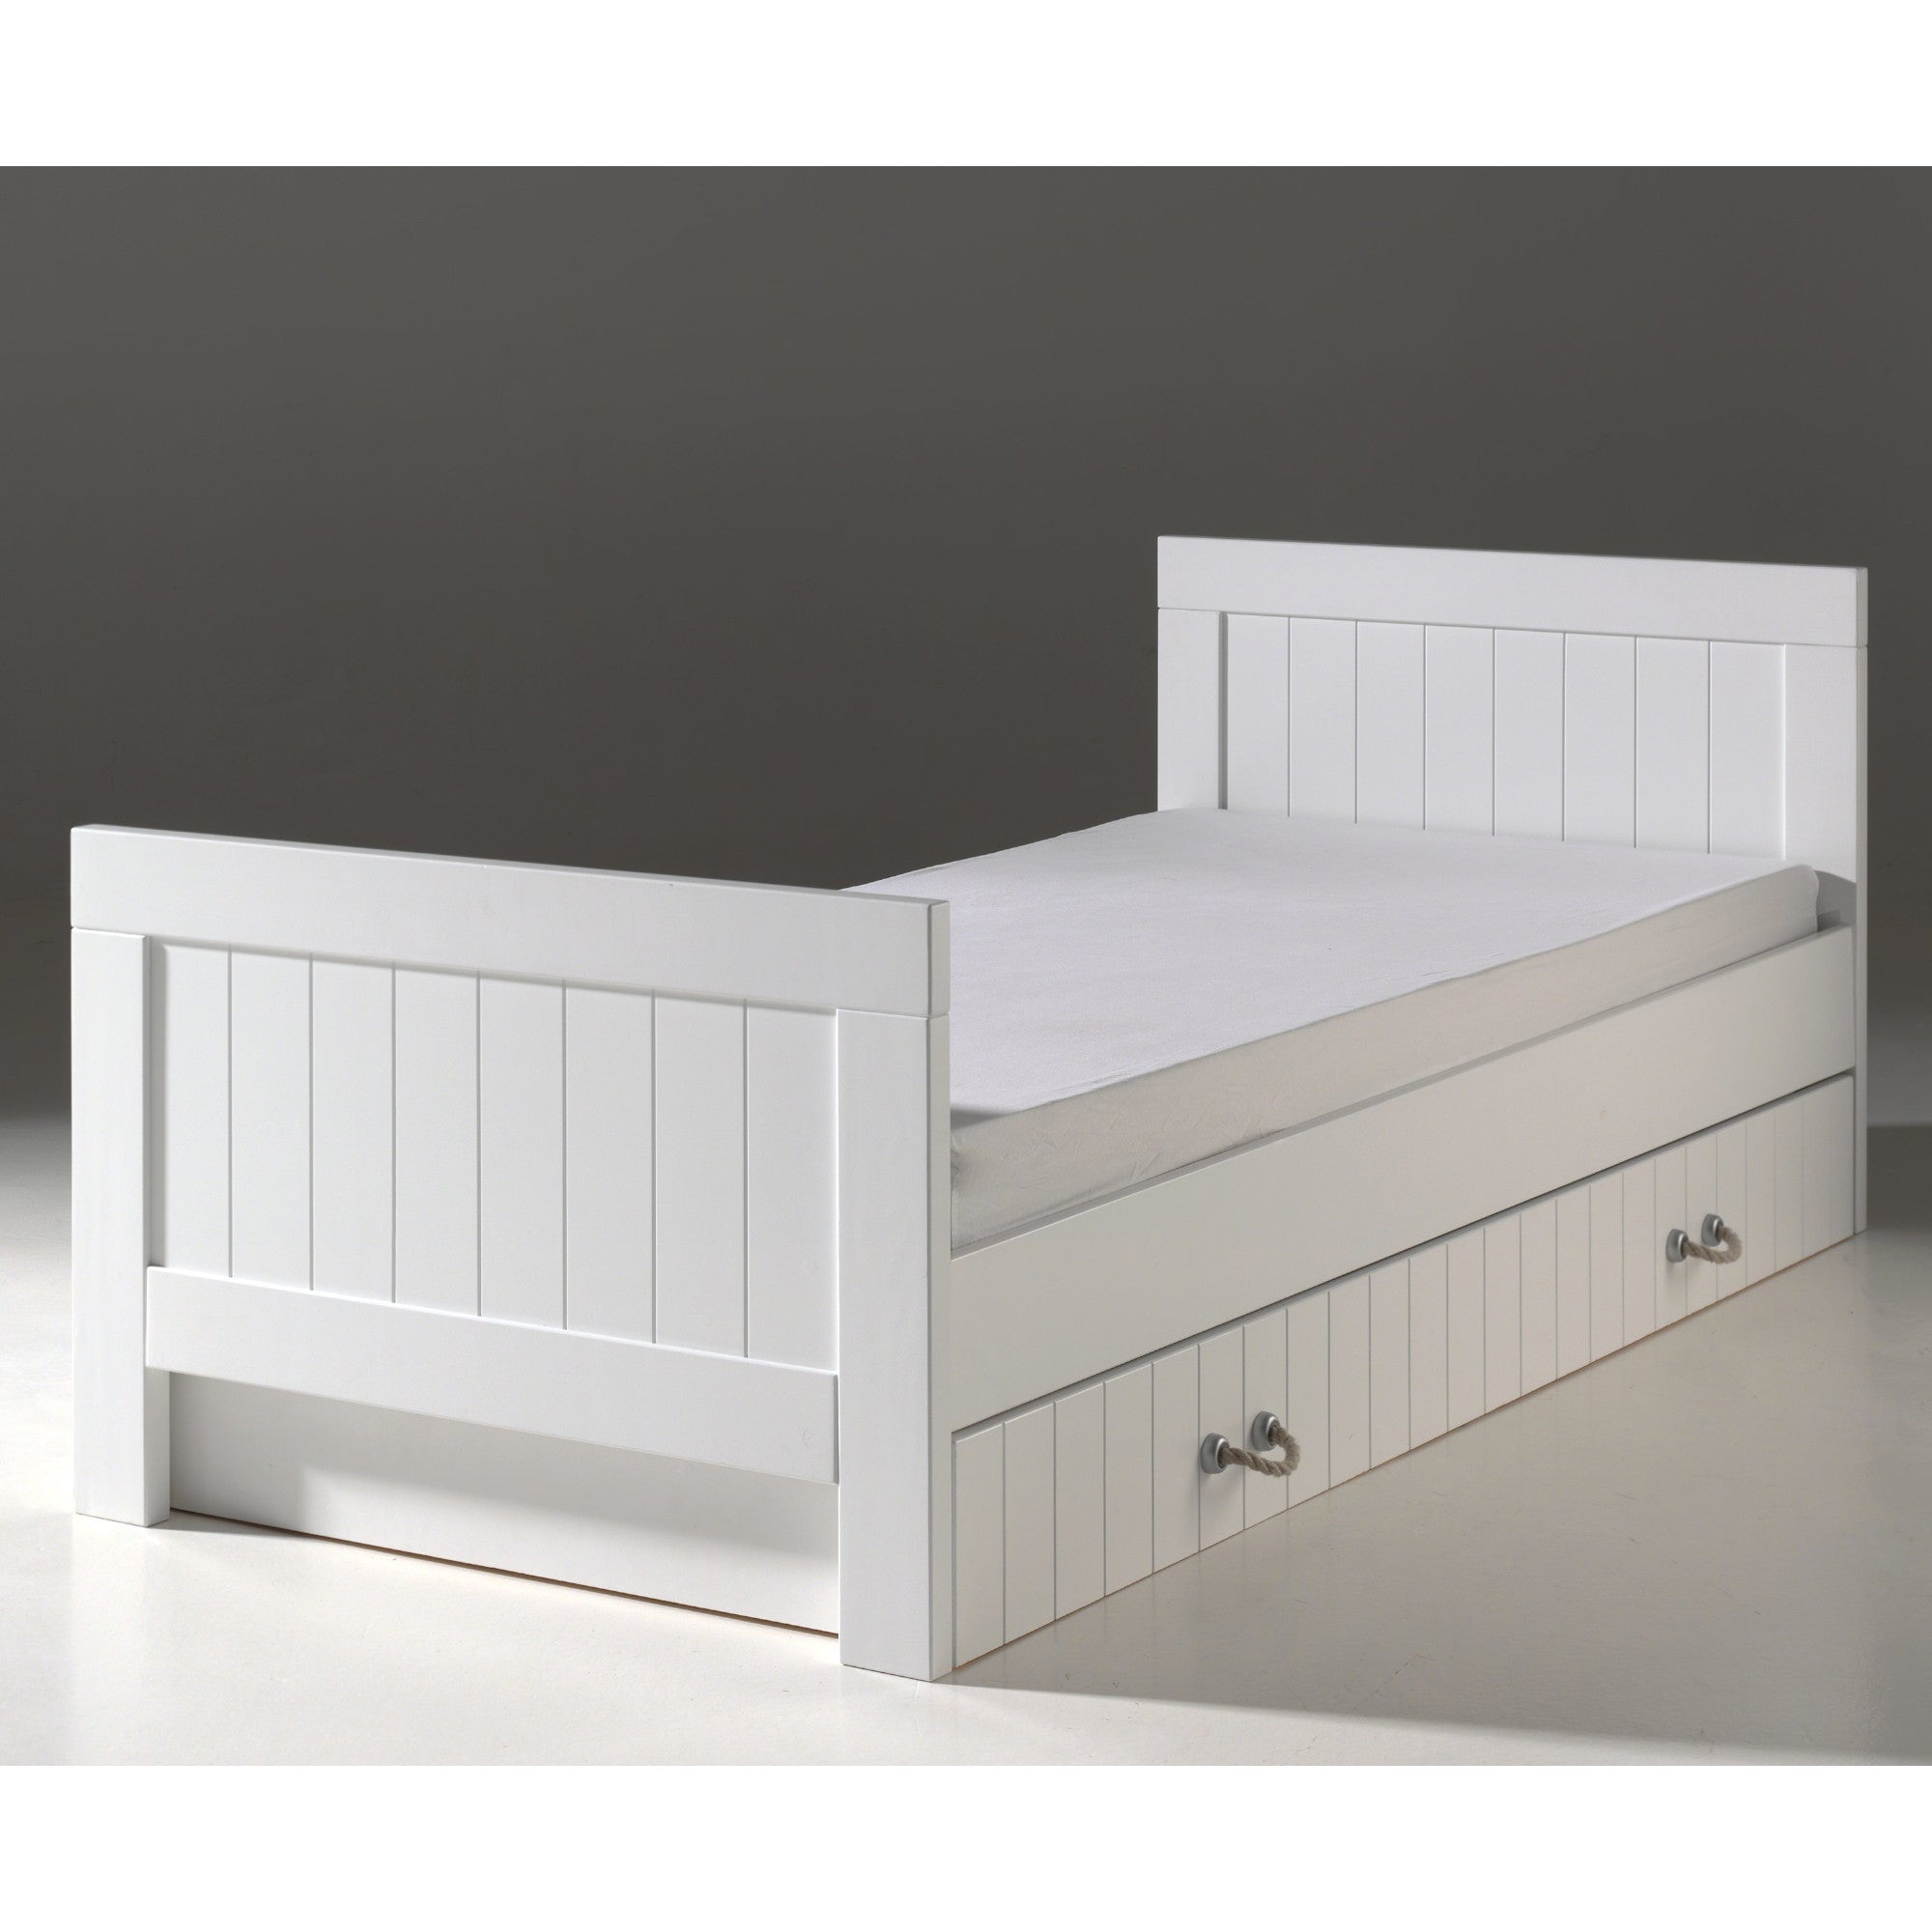 Jugendbett Lee Vipack inkl Bett 90*200 cm + Bettschublade Landhaus-Optik aus hochwertigem MDF Holz